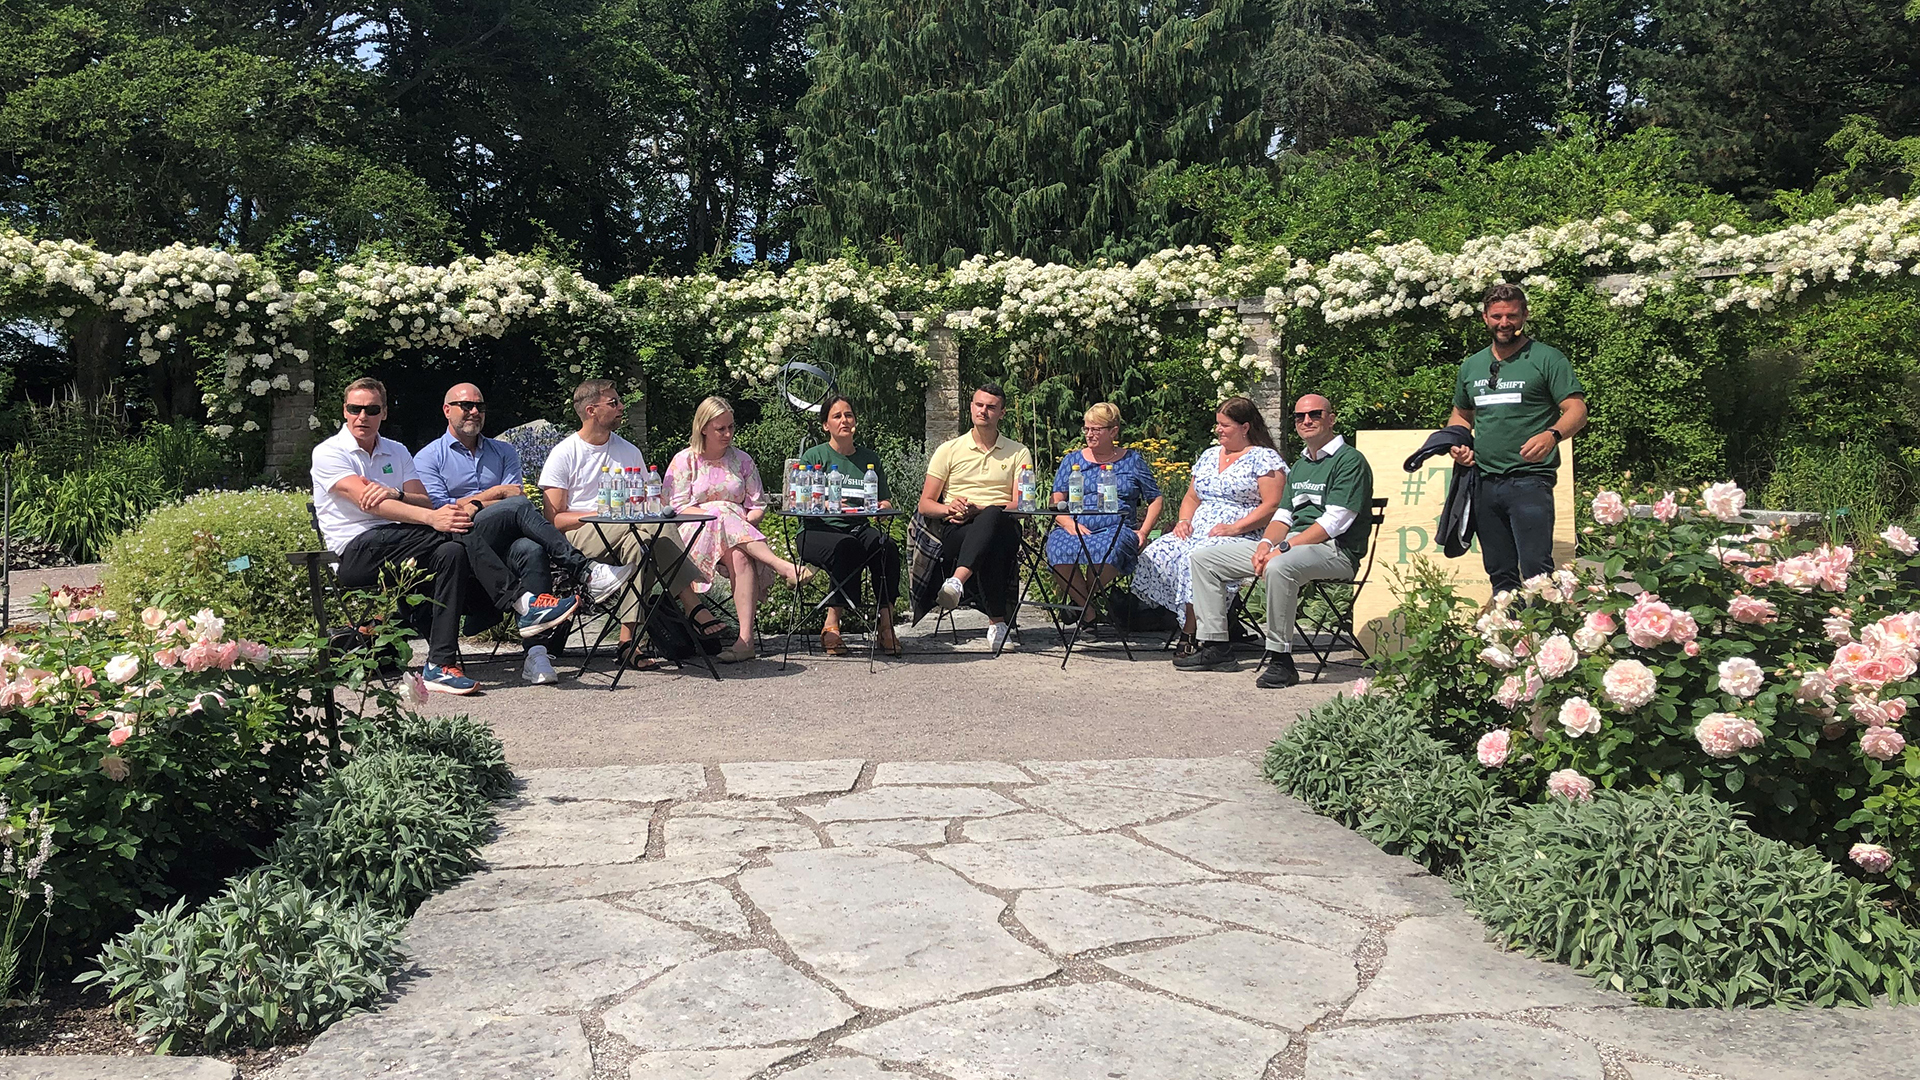 Åtta personer som sitter och en som står upp i en trädgård, omgiven av buskar och blommor. En av personerna pratar och artikulerar med händerna.